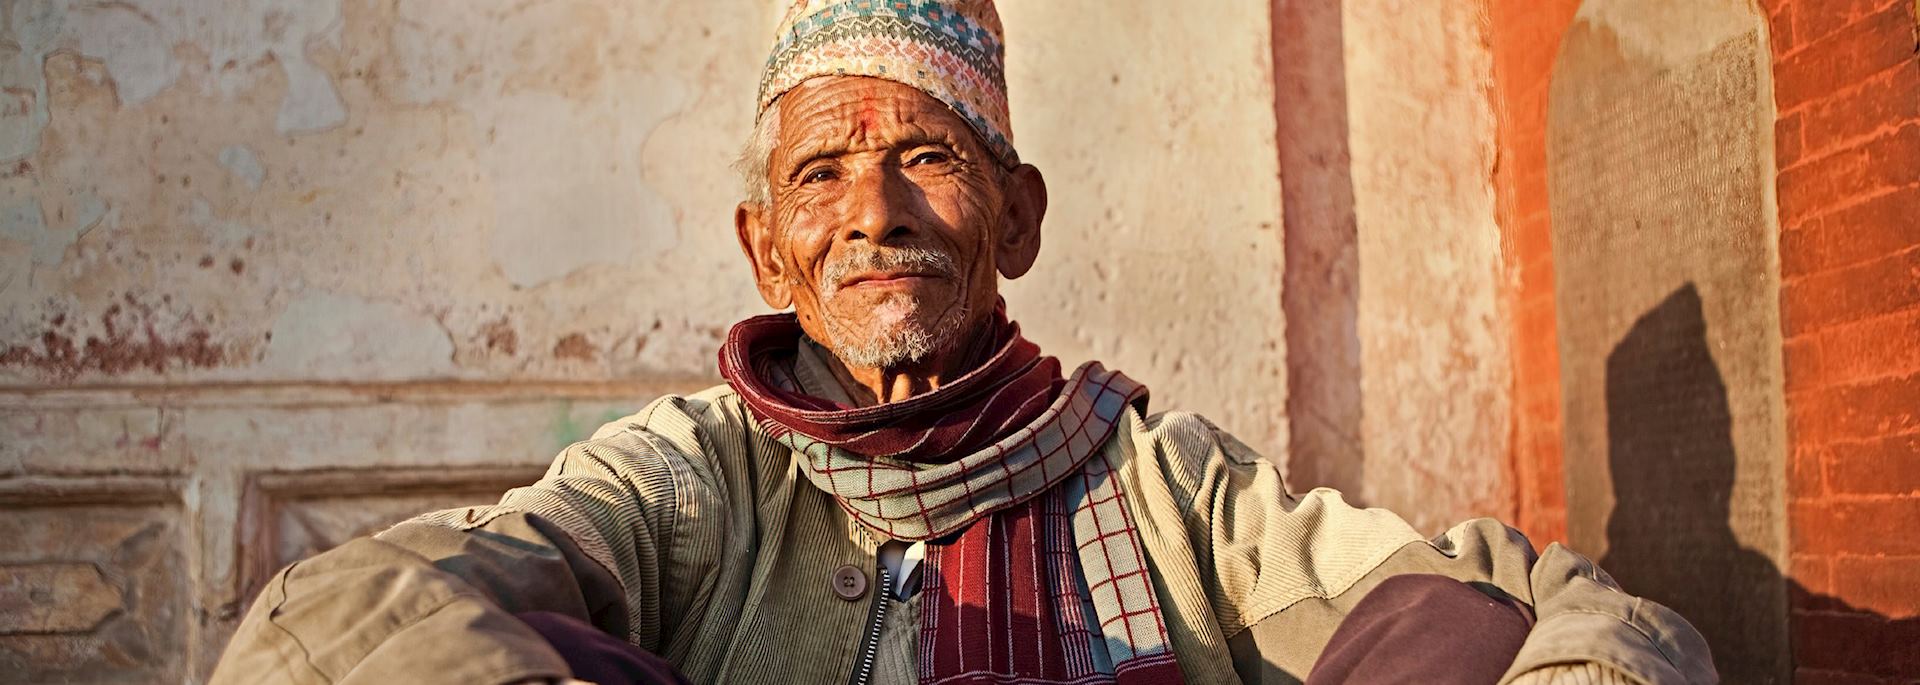 Old Nepali man